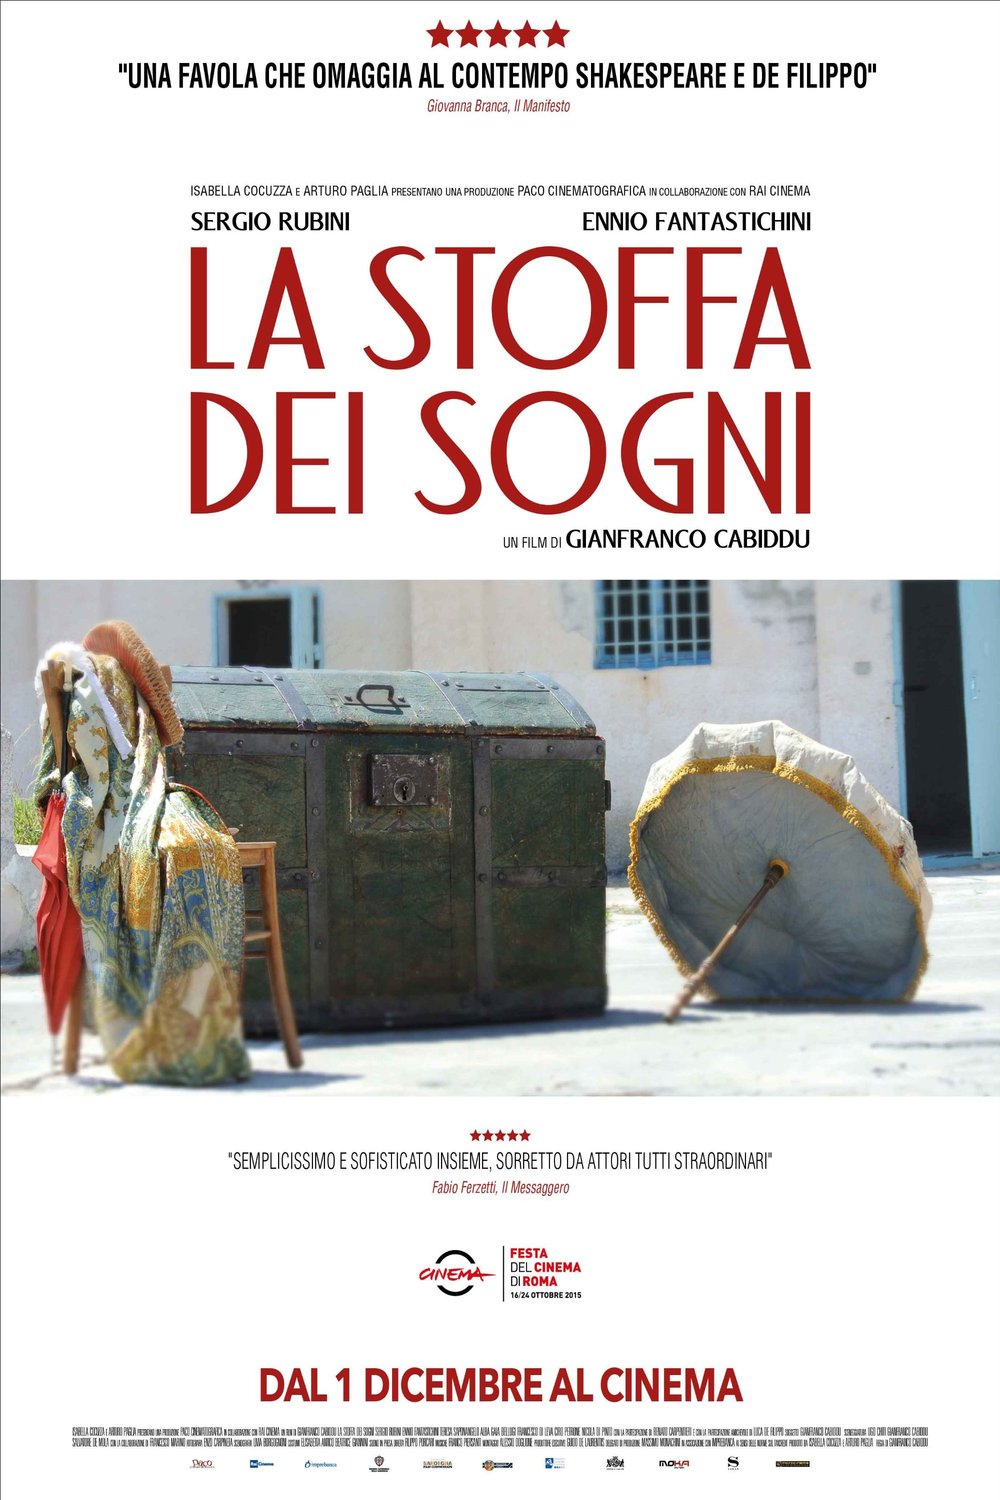 Poster of the movie La Stoffa Dei Sogni